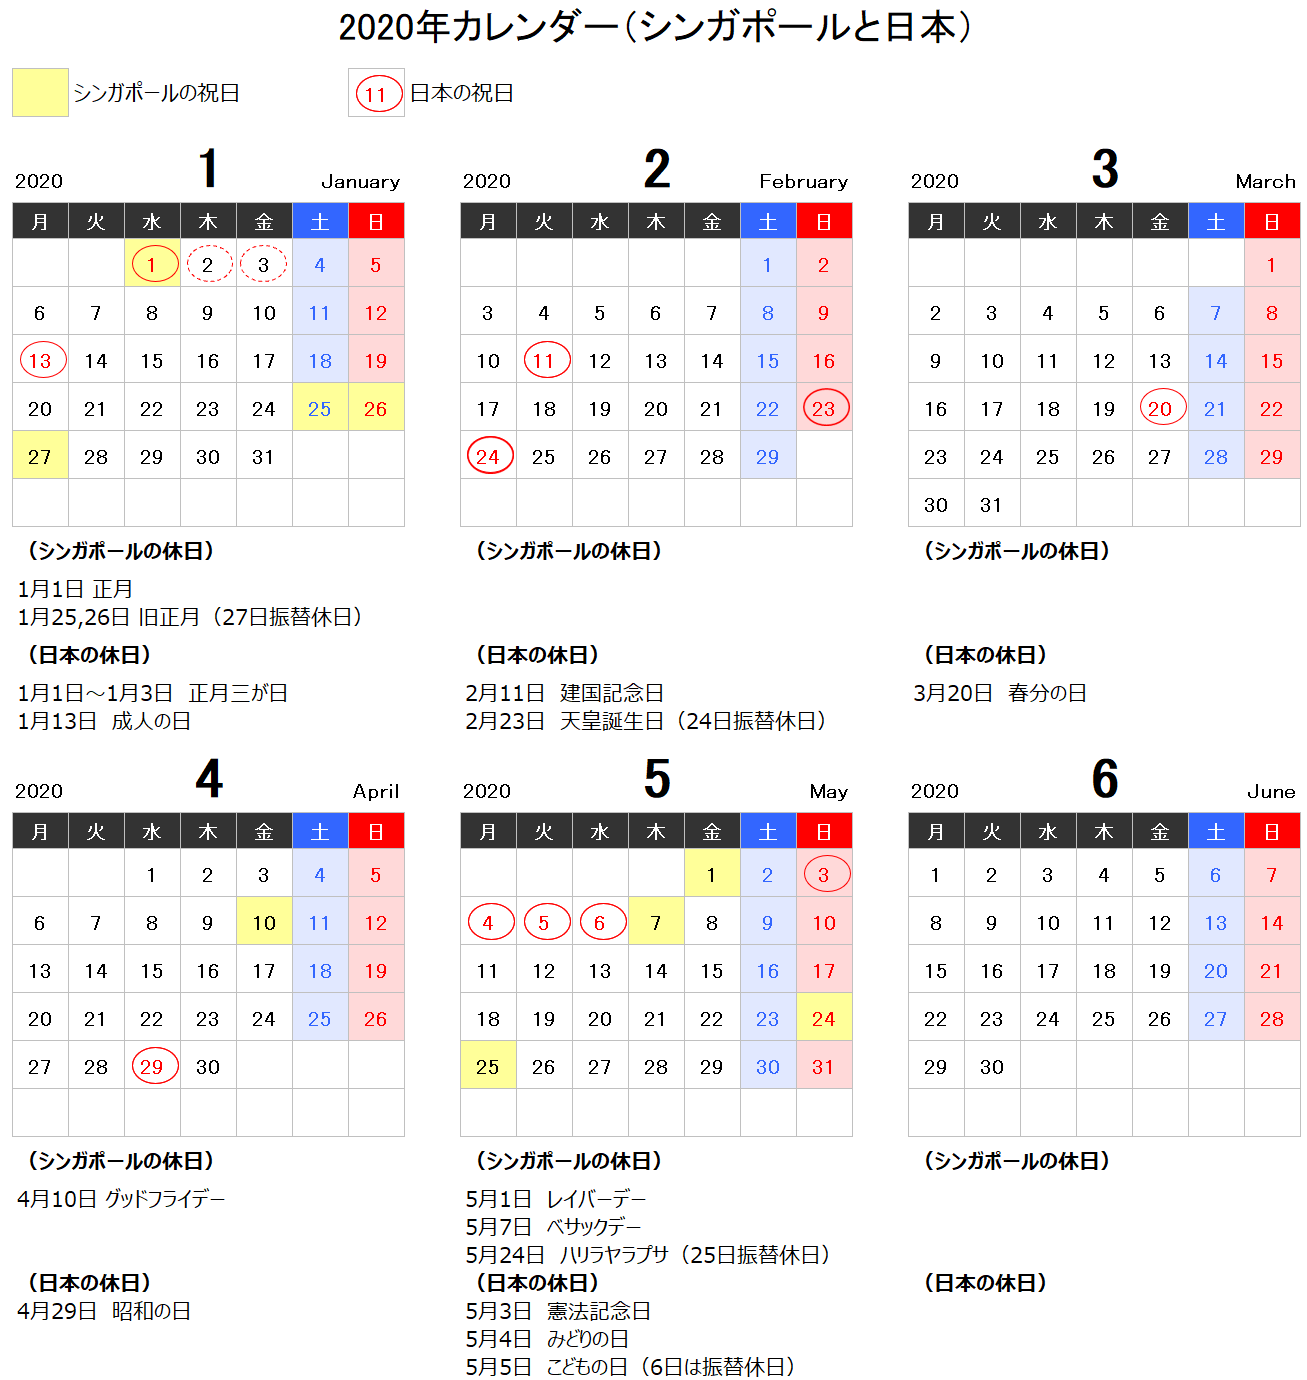 2020年 シンガポールの休日 祝日カレンダー 気になる日本の祝日情報